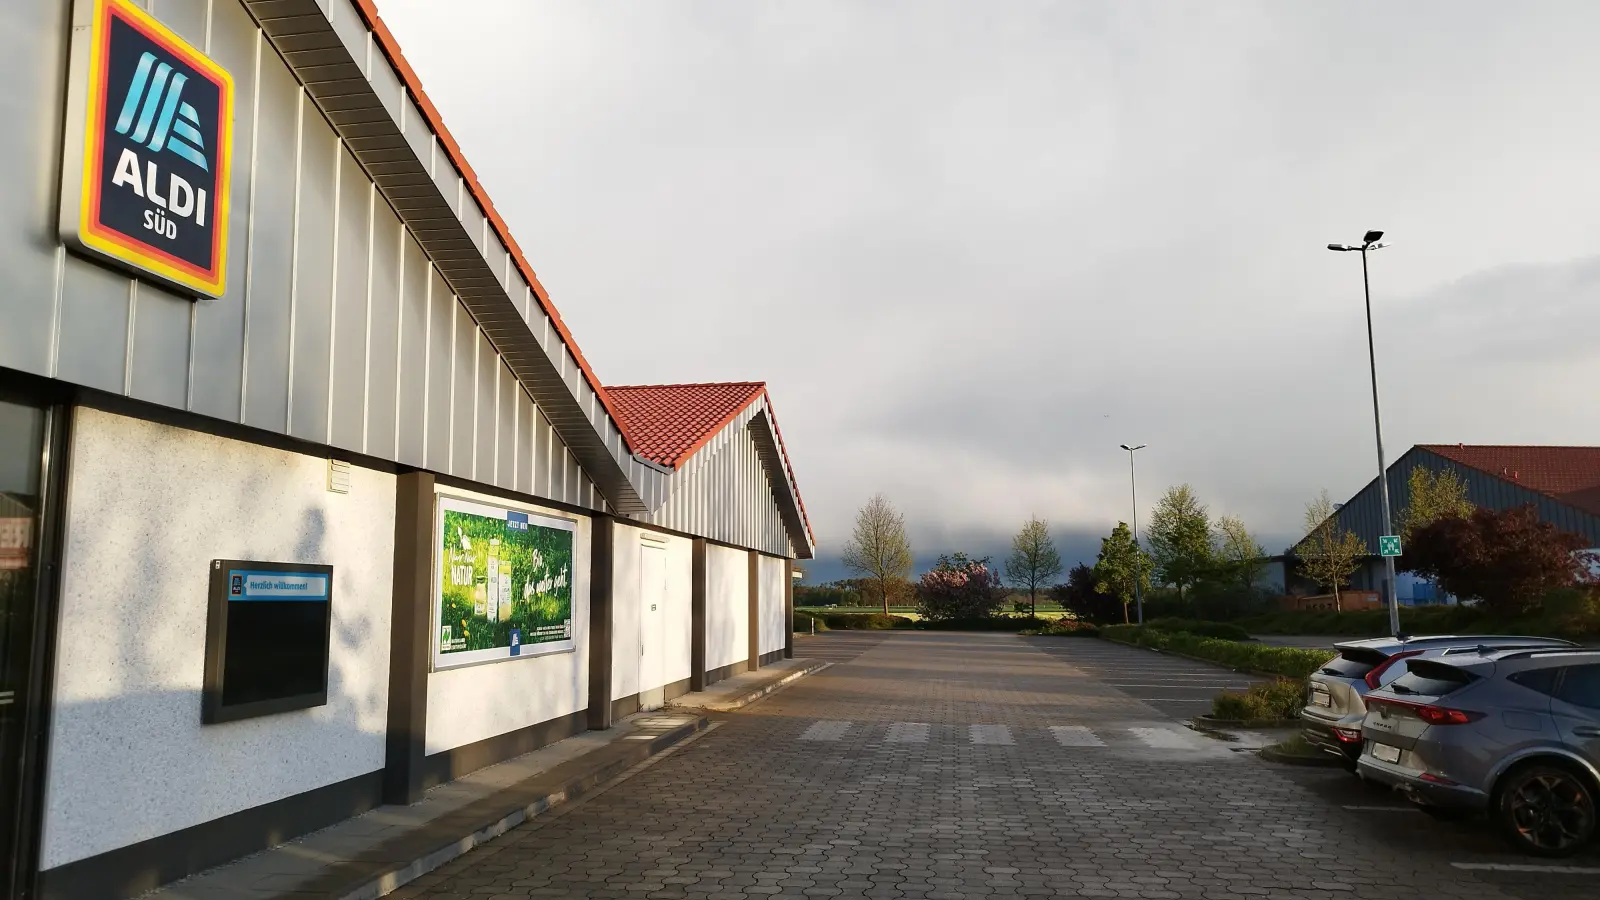 Zwischen dem bestehenden Aldi- und dem benachbarten Rewe-Markt soll in Merkendorf noch ein Drogeriemarkt gestellt werden. Die Zahl der Parkplätze wird sich dadurch verringern. (Foto: Robert Maurer)